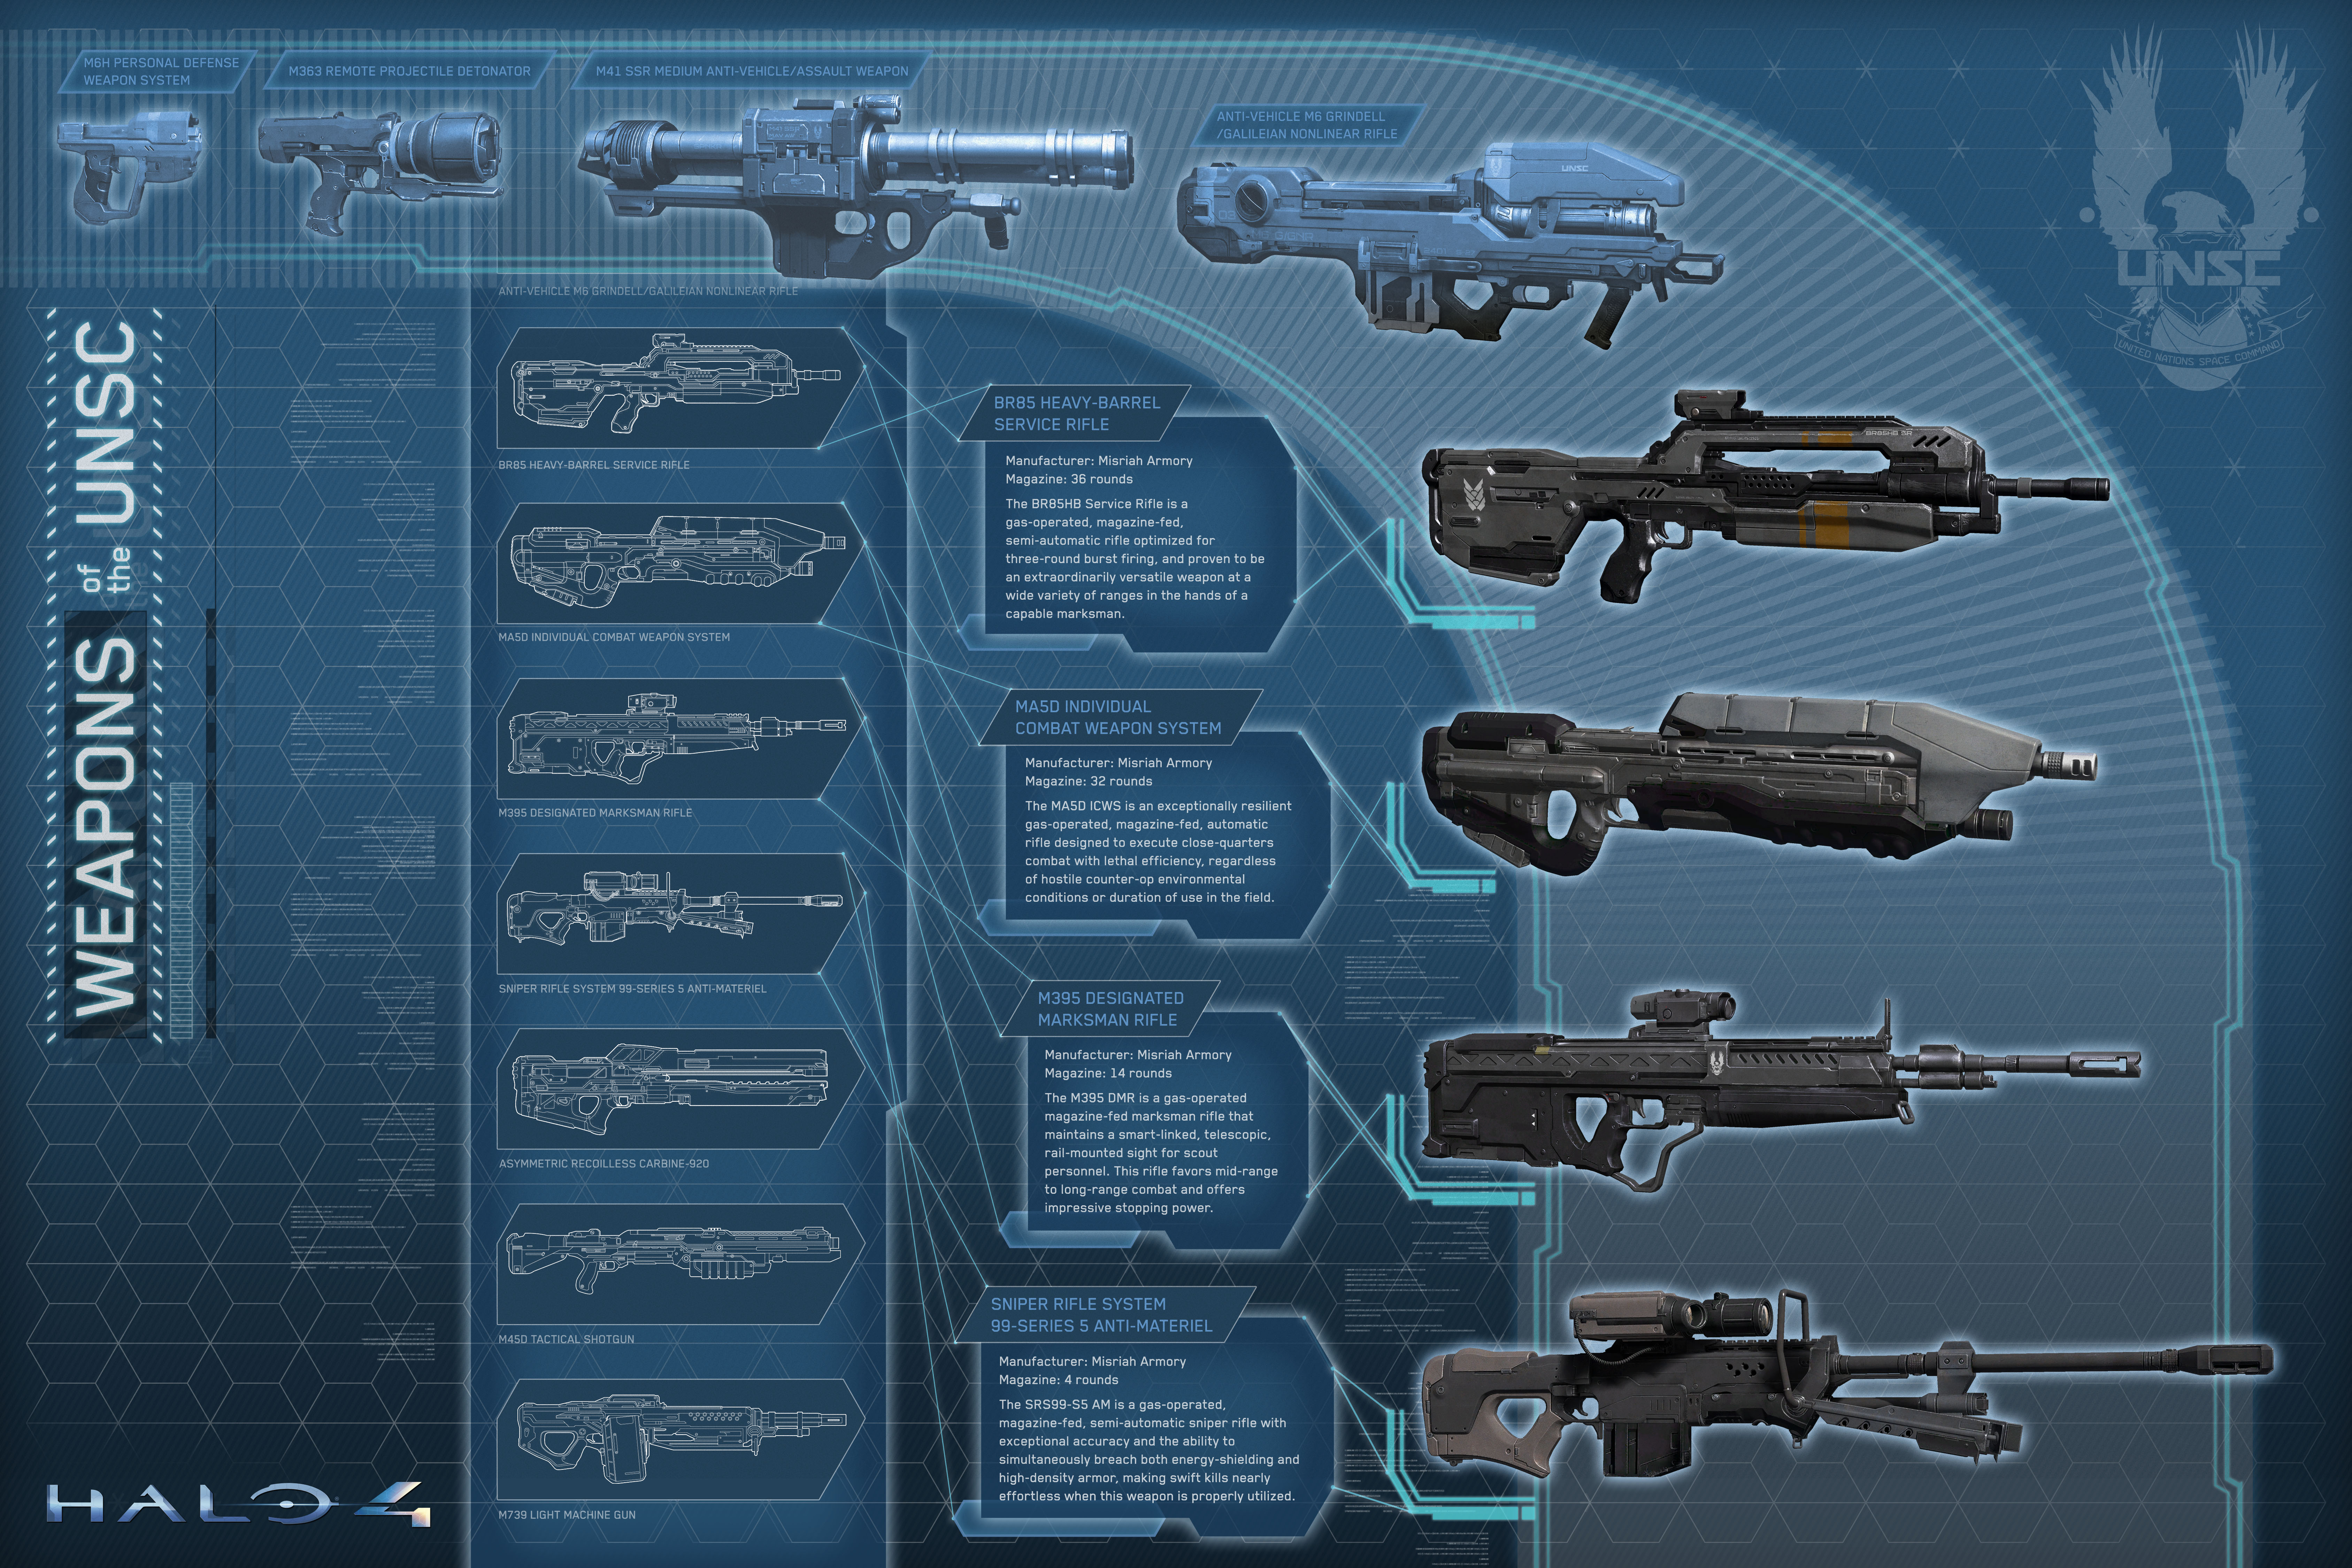 Halo4_underscore_weapons.jpg